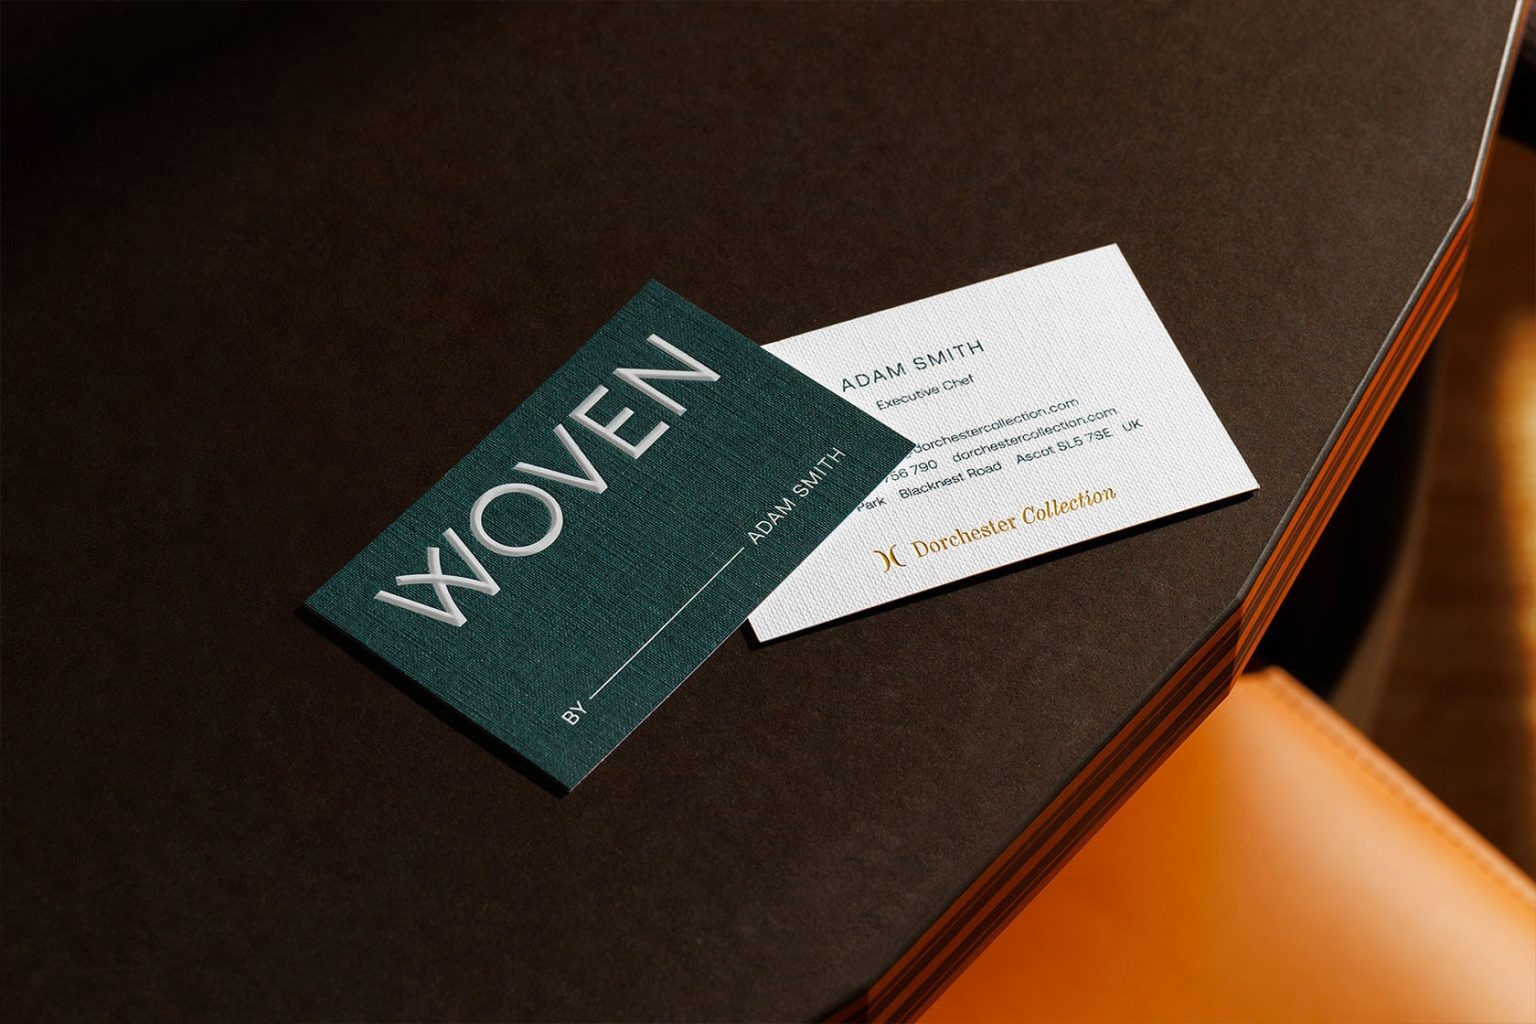 Woven米其林星级餐厅品牌形象设计